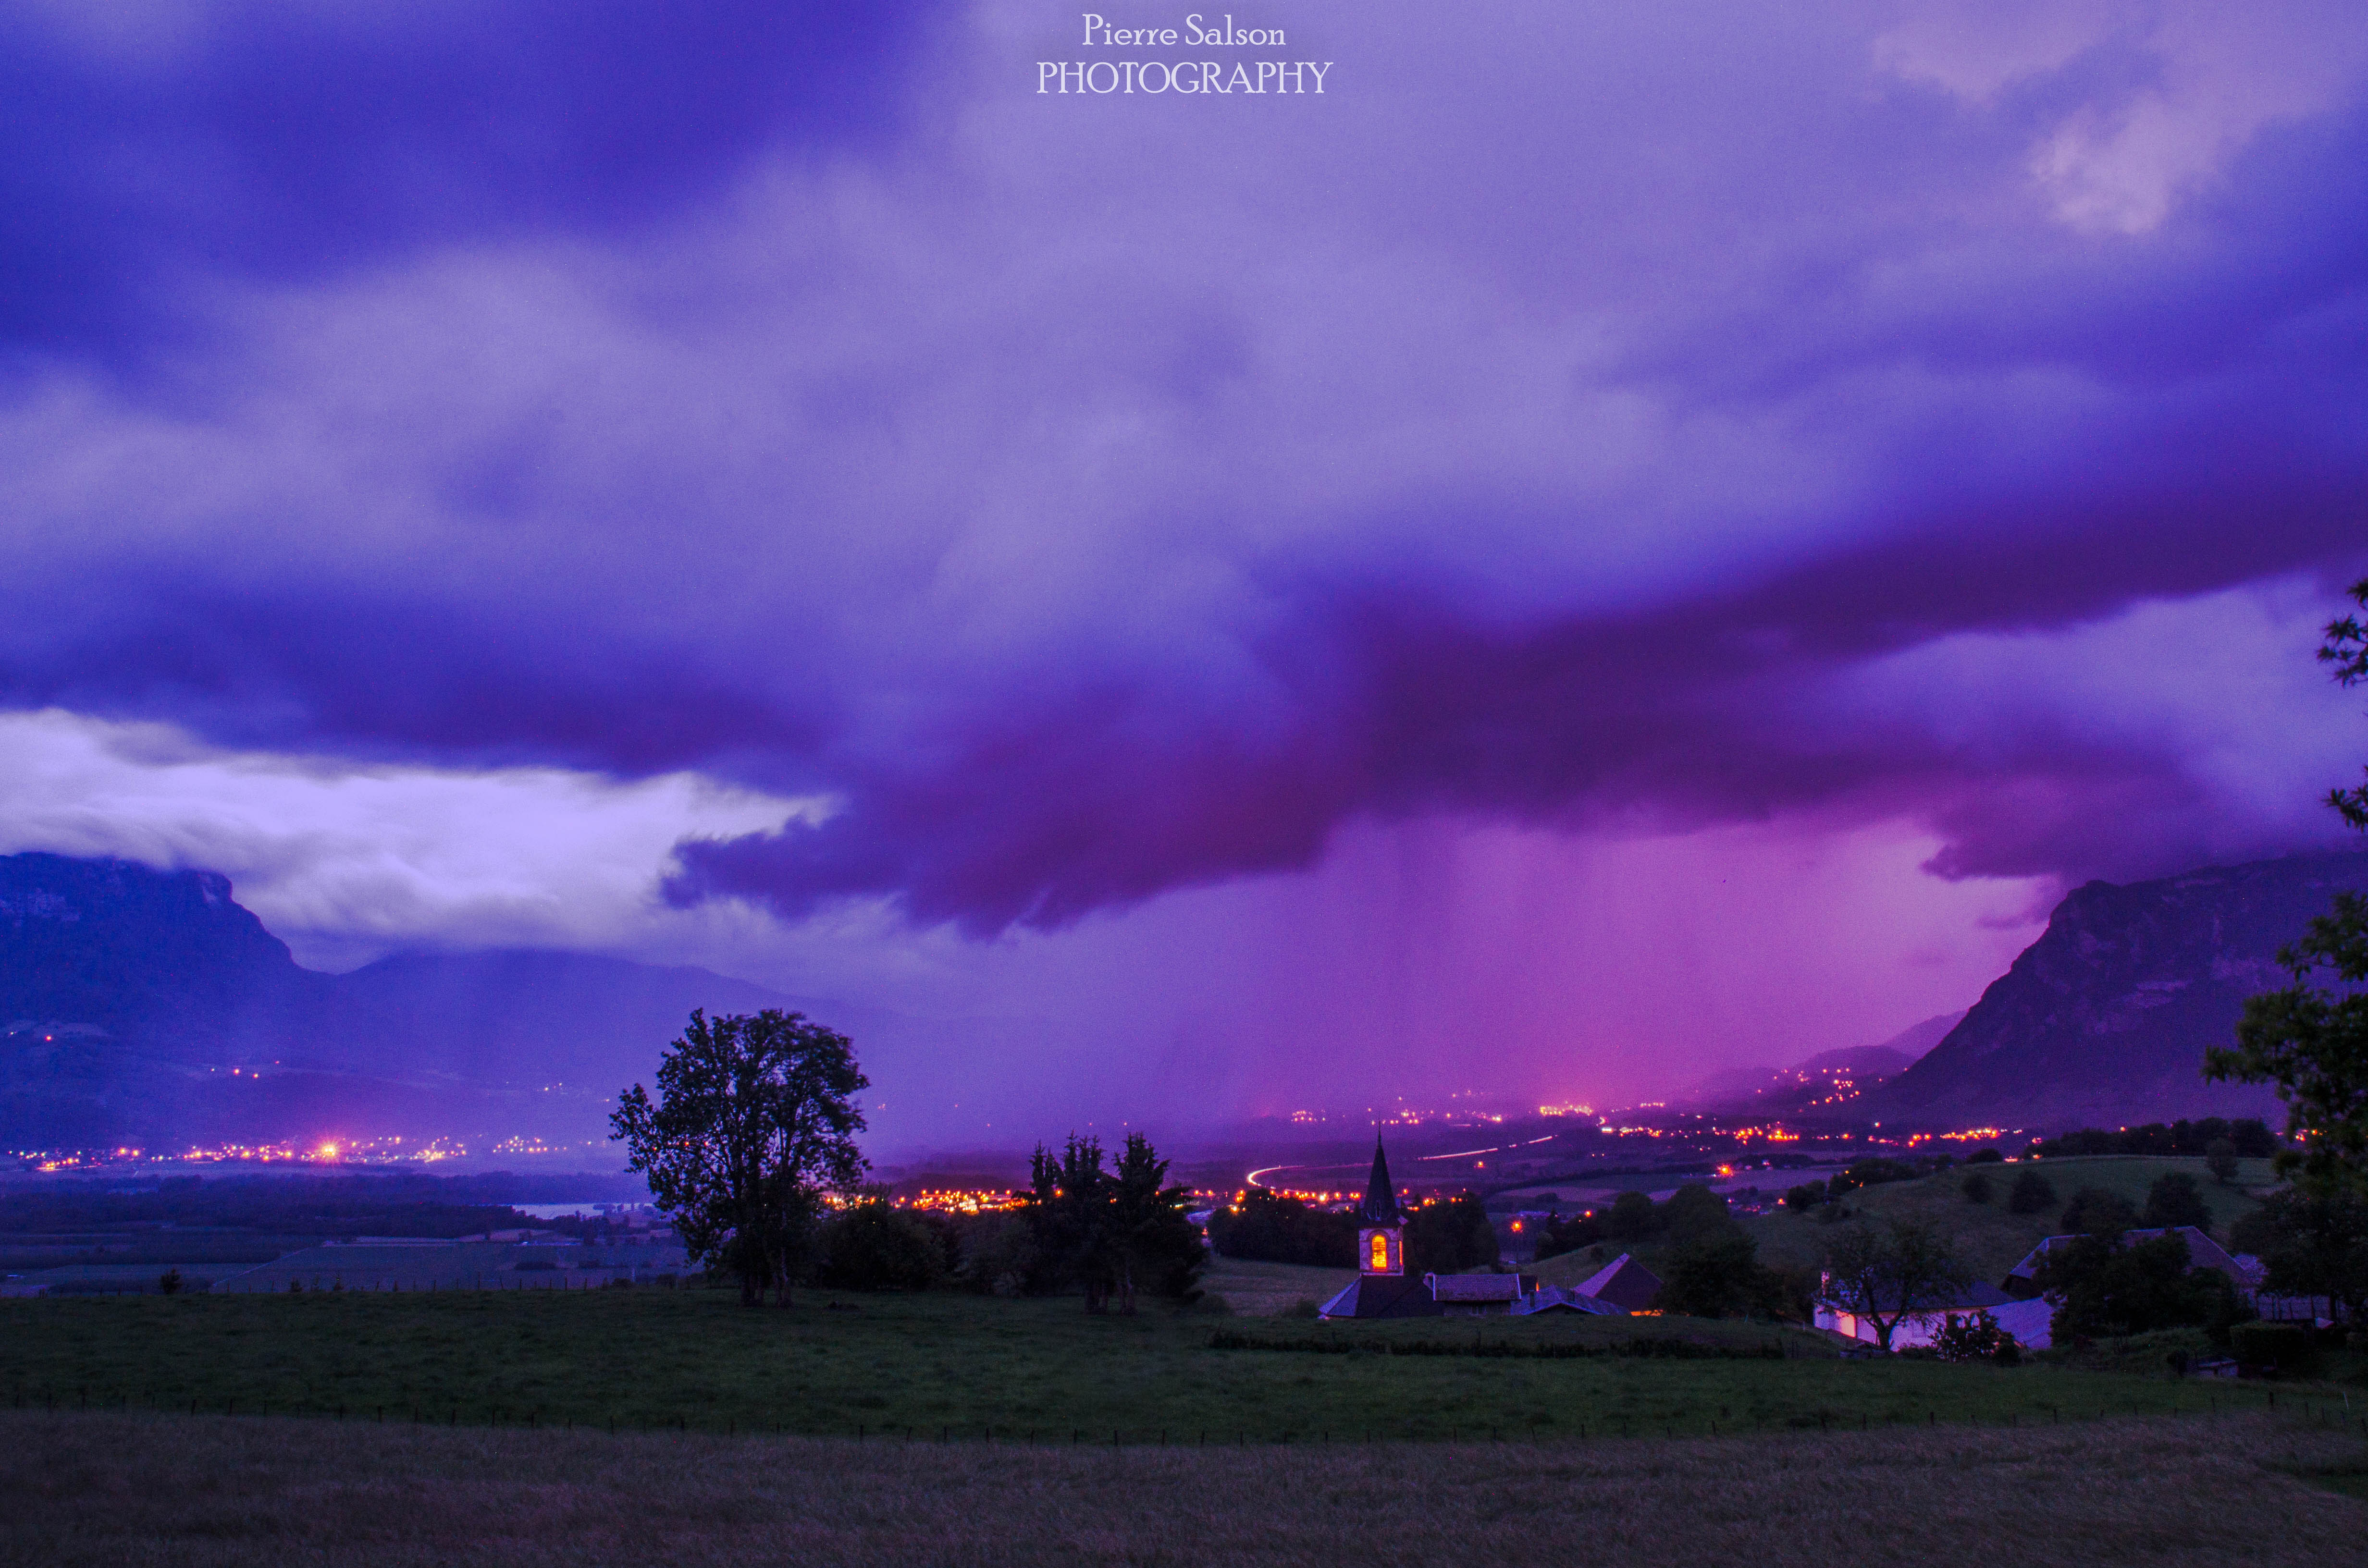 Bel orage au dessus de Montmélian (73) - 11/06/2018 21:50 - Pierre Salson